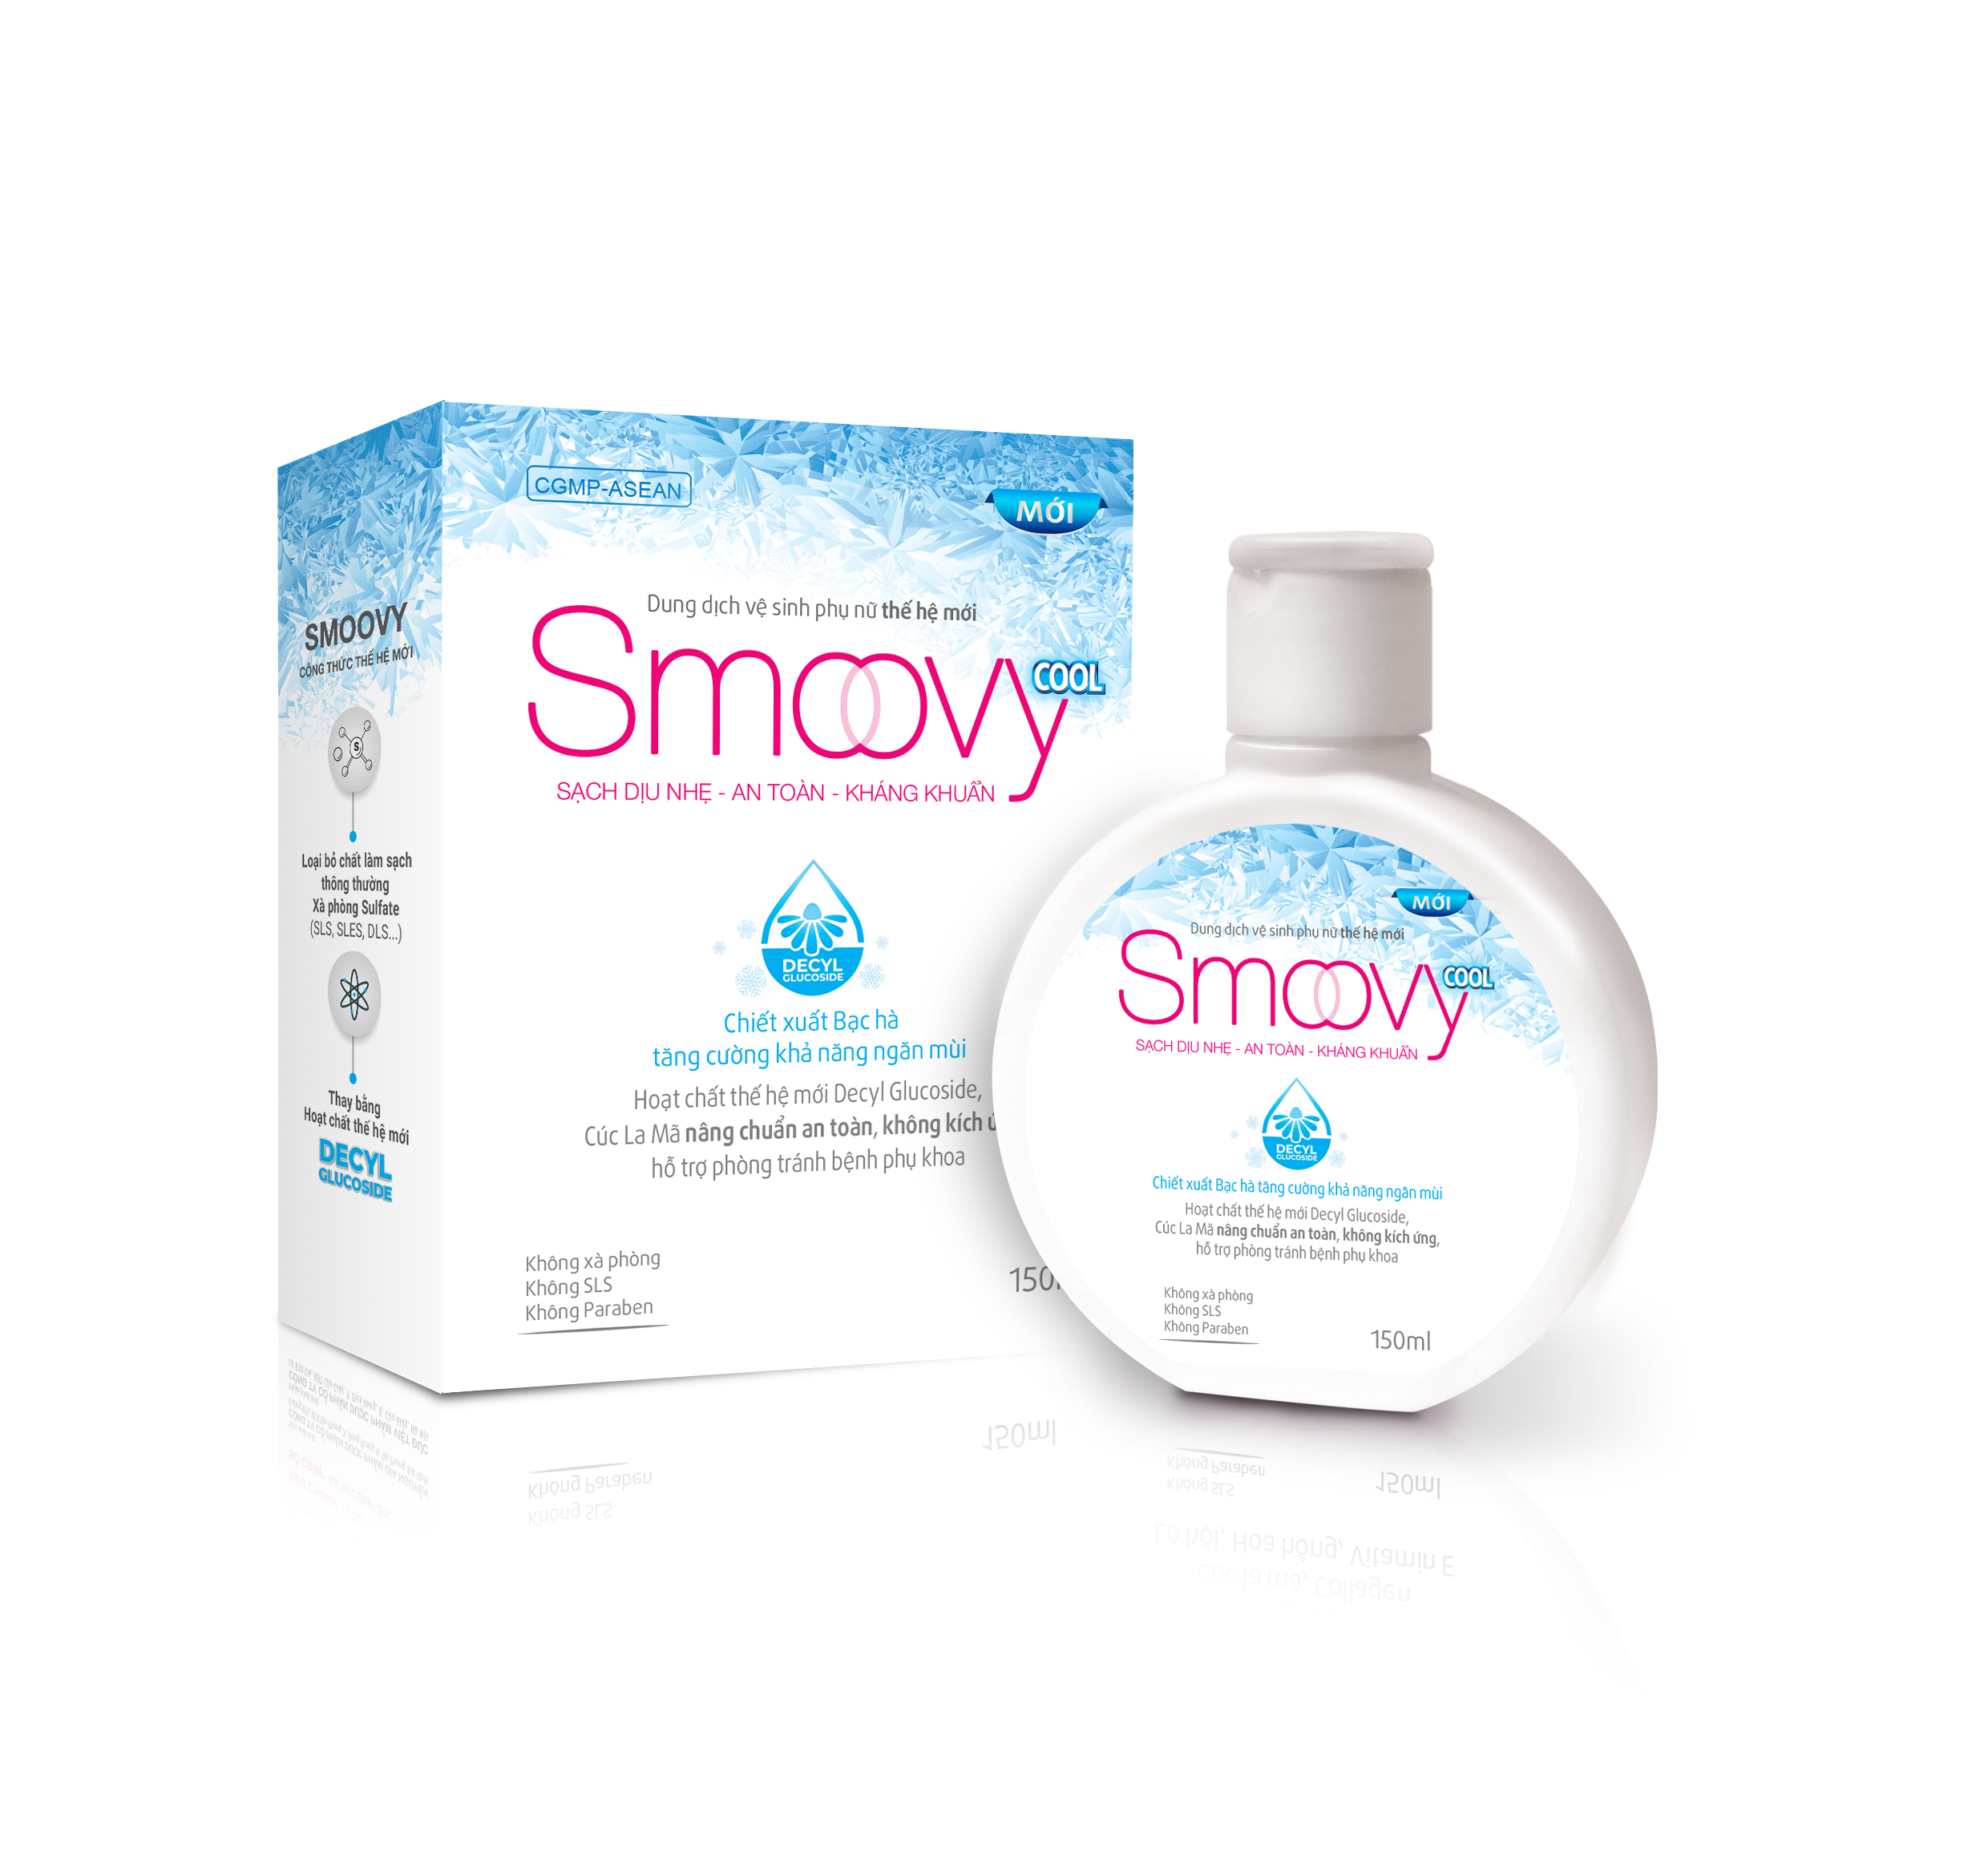 Dung dịch vệ sinh phụ nữ thế hệ mới Smoovy và Smoovy Cool sạch dịu nhẹ, an toàn, kháng khuẩn 150ml